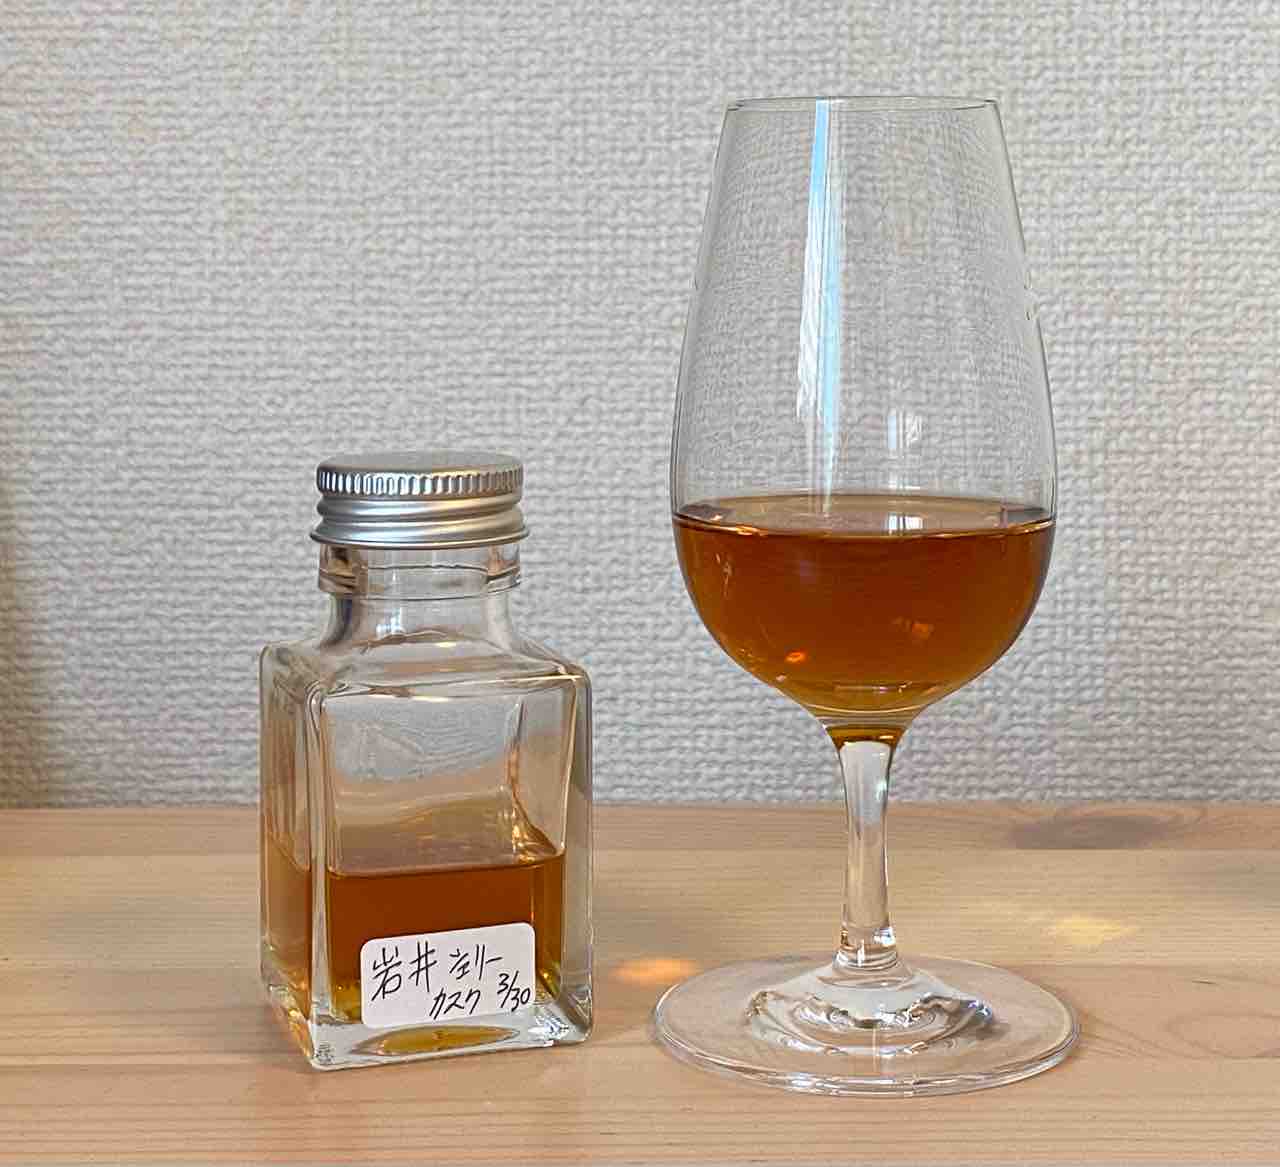 岩井トラディション シェリーカスク 40% マルスウイスキー : くりりんのウイスキー置場